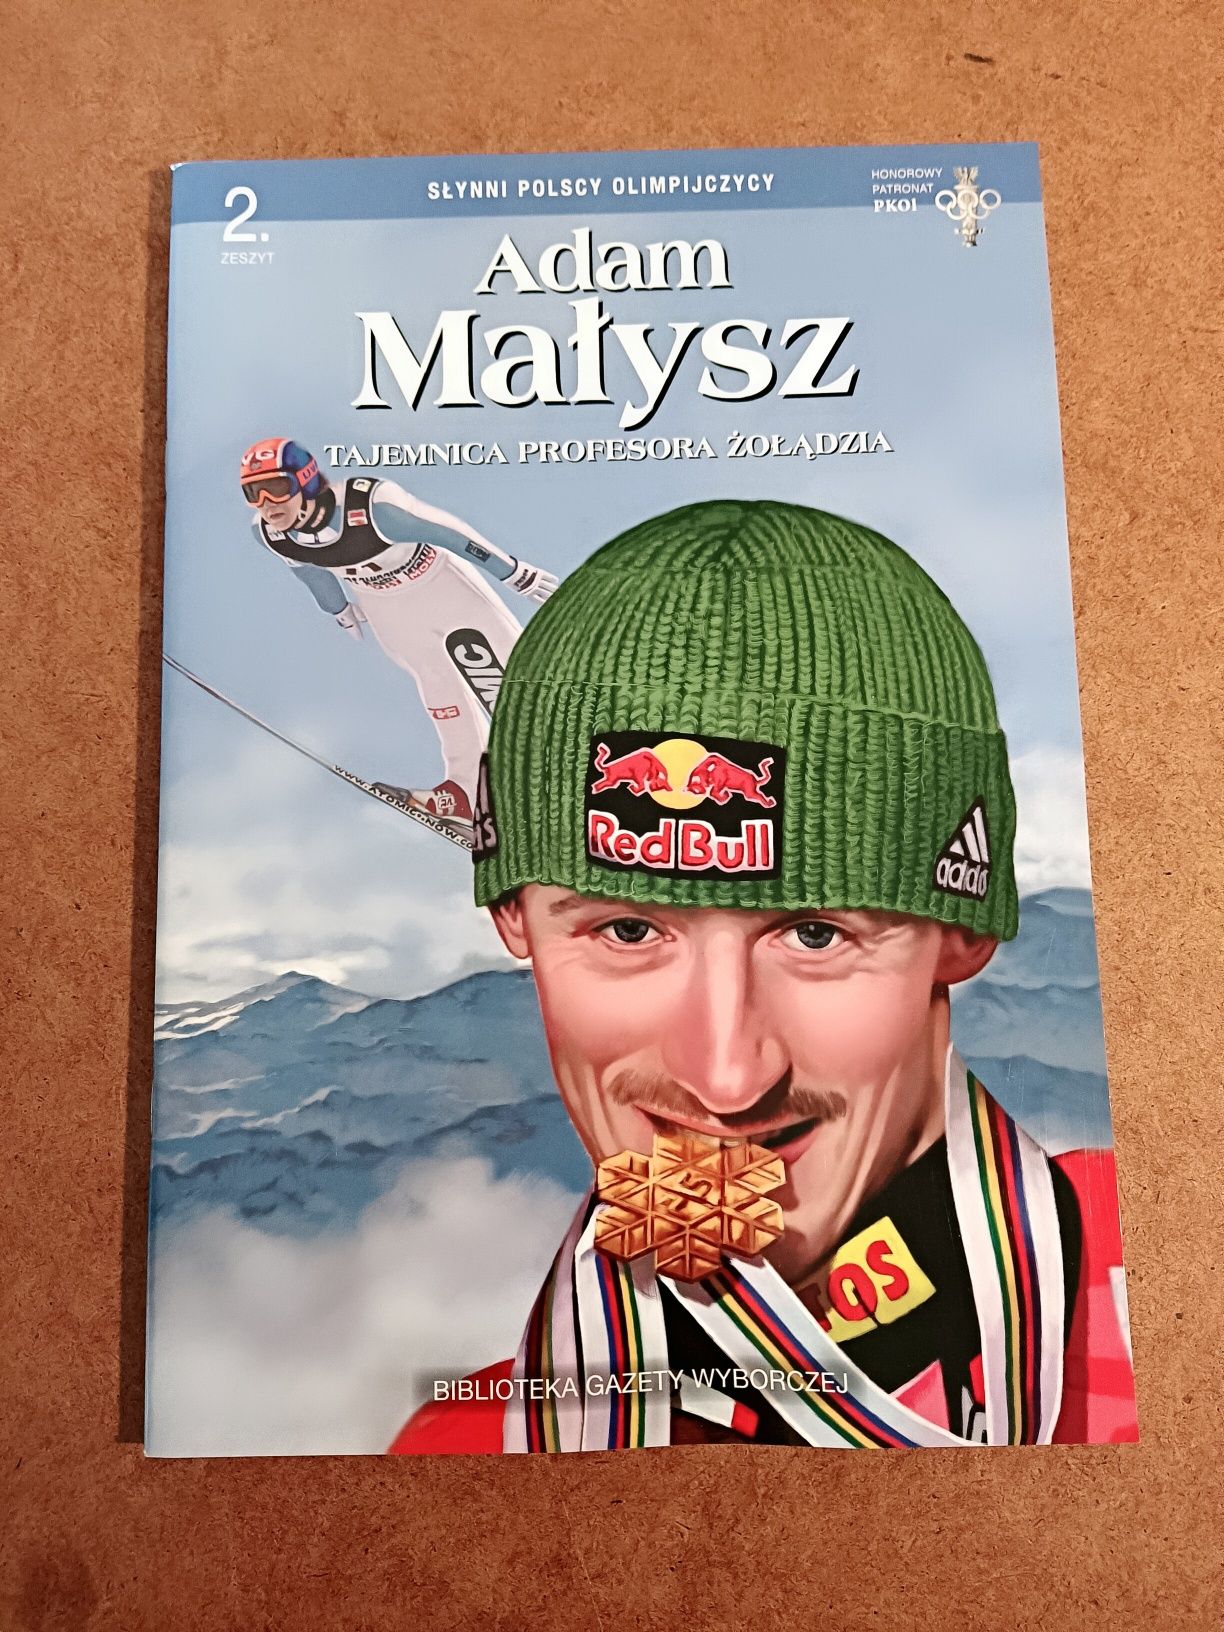 Słynni Polscy olimpijczycy, Adam Małysz